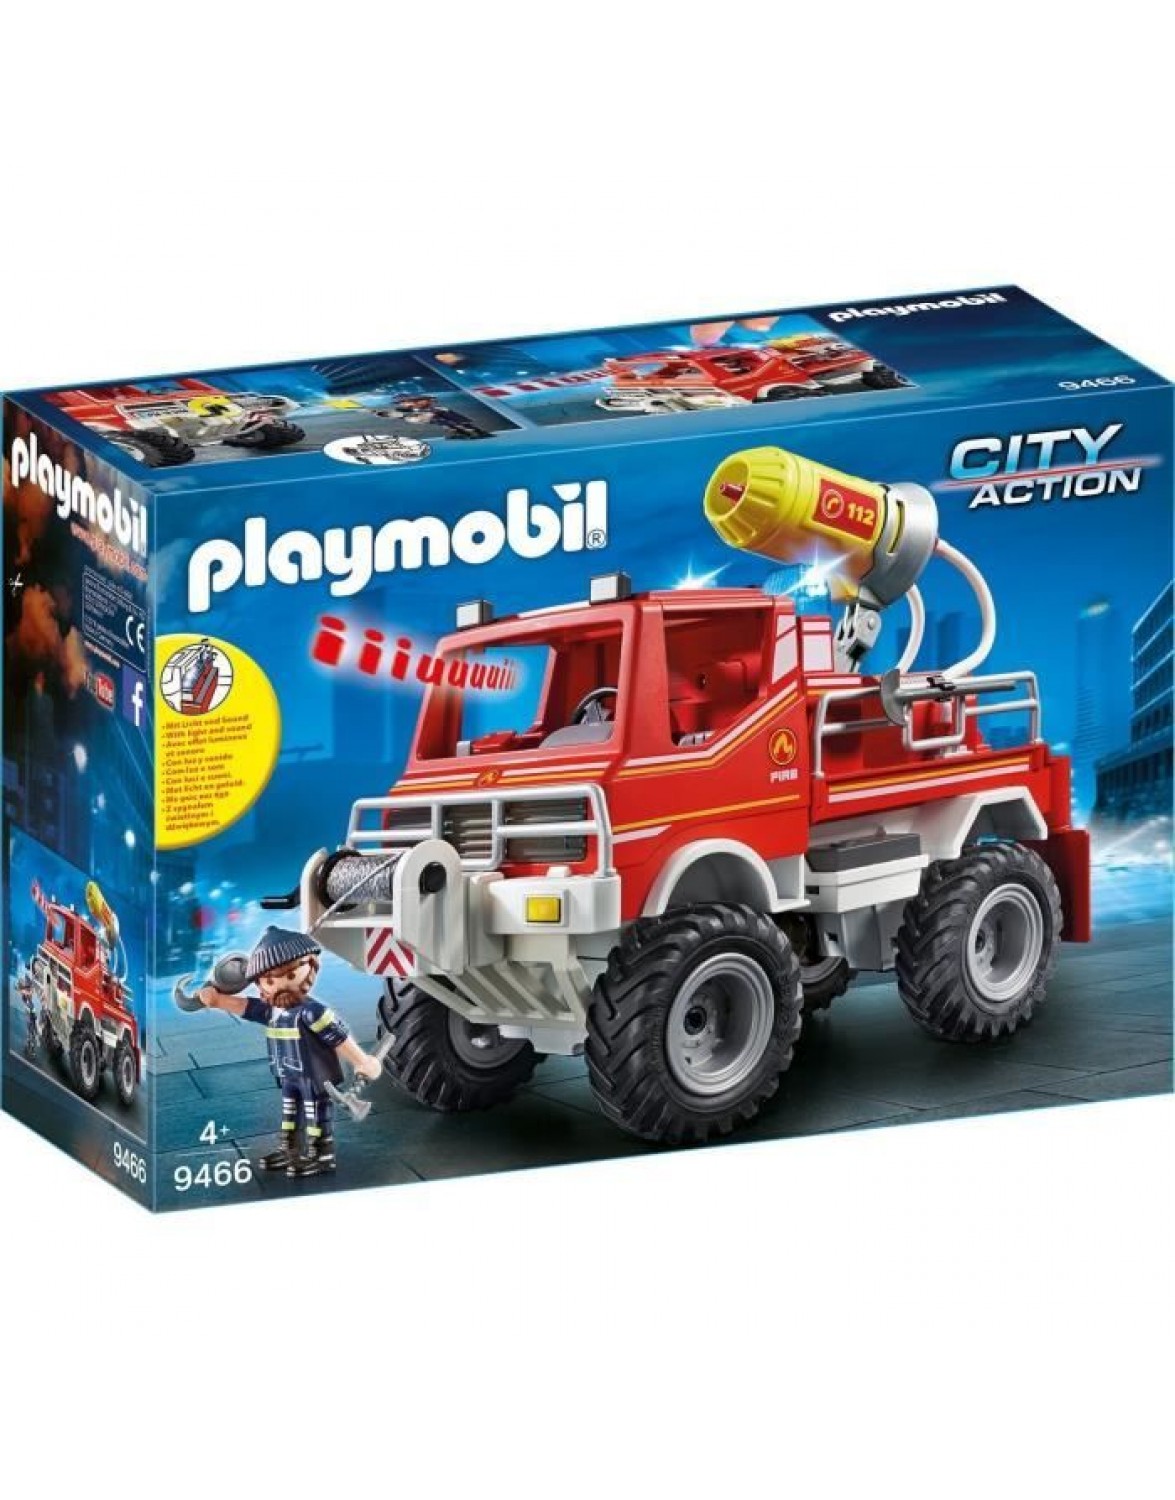 Playmobil Action City 9466 Playmobil. PLAYMOBIL CITY ПОЖЕЖНИЙ АВТОМОБІЛЬ ПОЖЕЖНА МАШИНА 9466